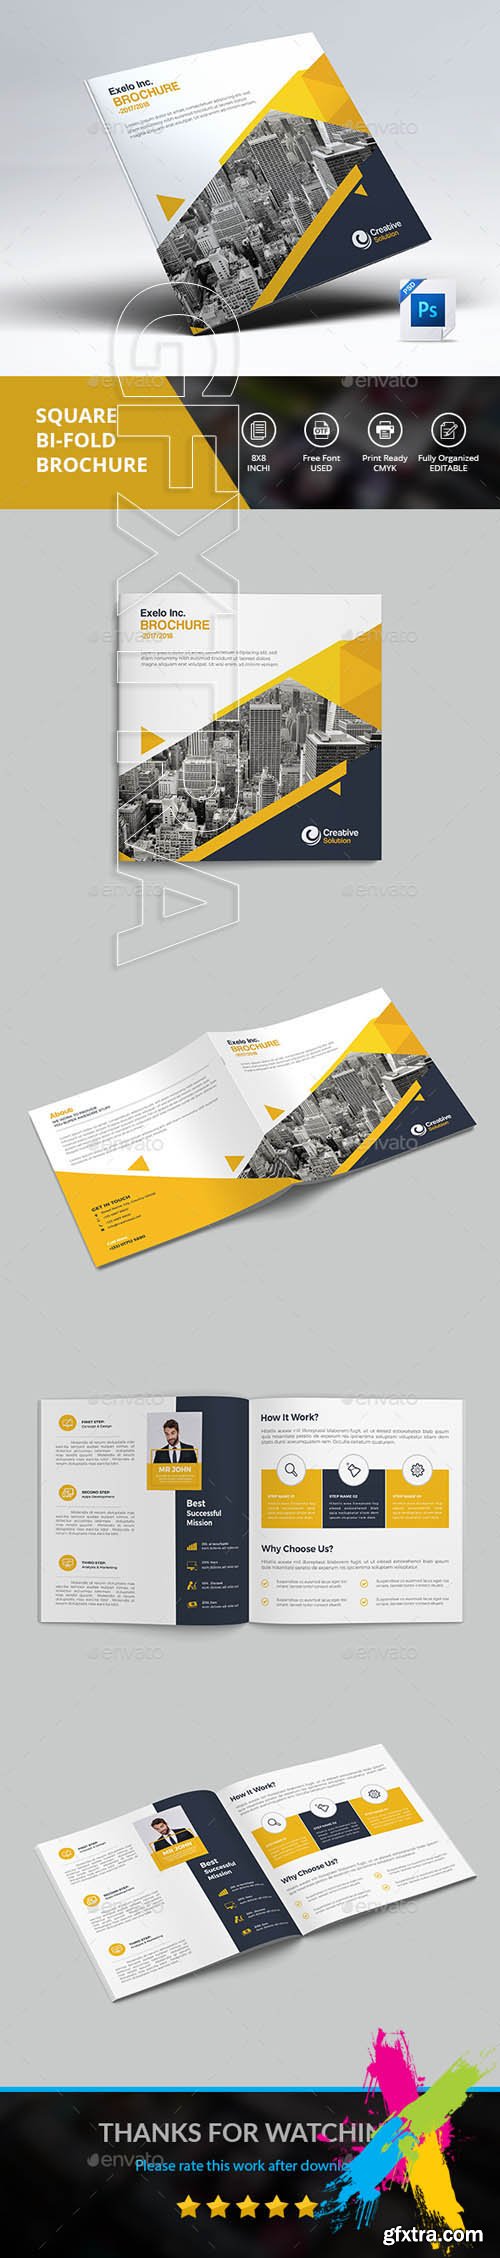 GraphicRiver - Brochure 20624715